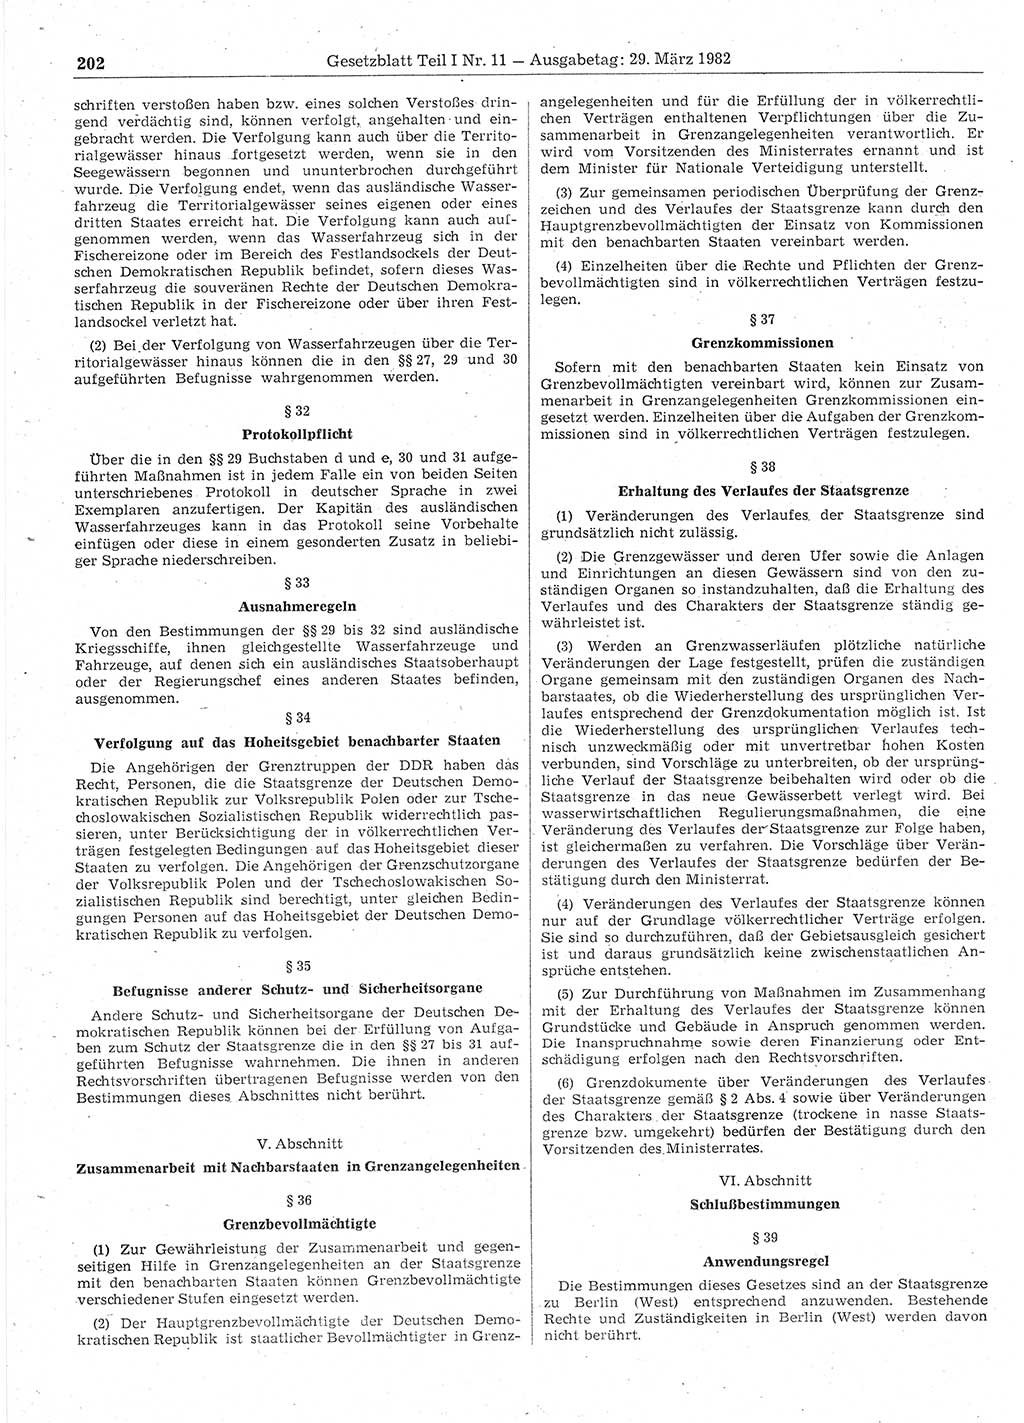 Gesetzblatt (GBl.) der Deutschen Demokratischen Republik (DDR) Teil Ⅰ 1982, Seite 202 (GBl. DDR Ⅰ 1982, S. 202)